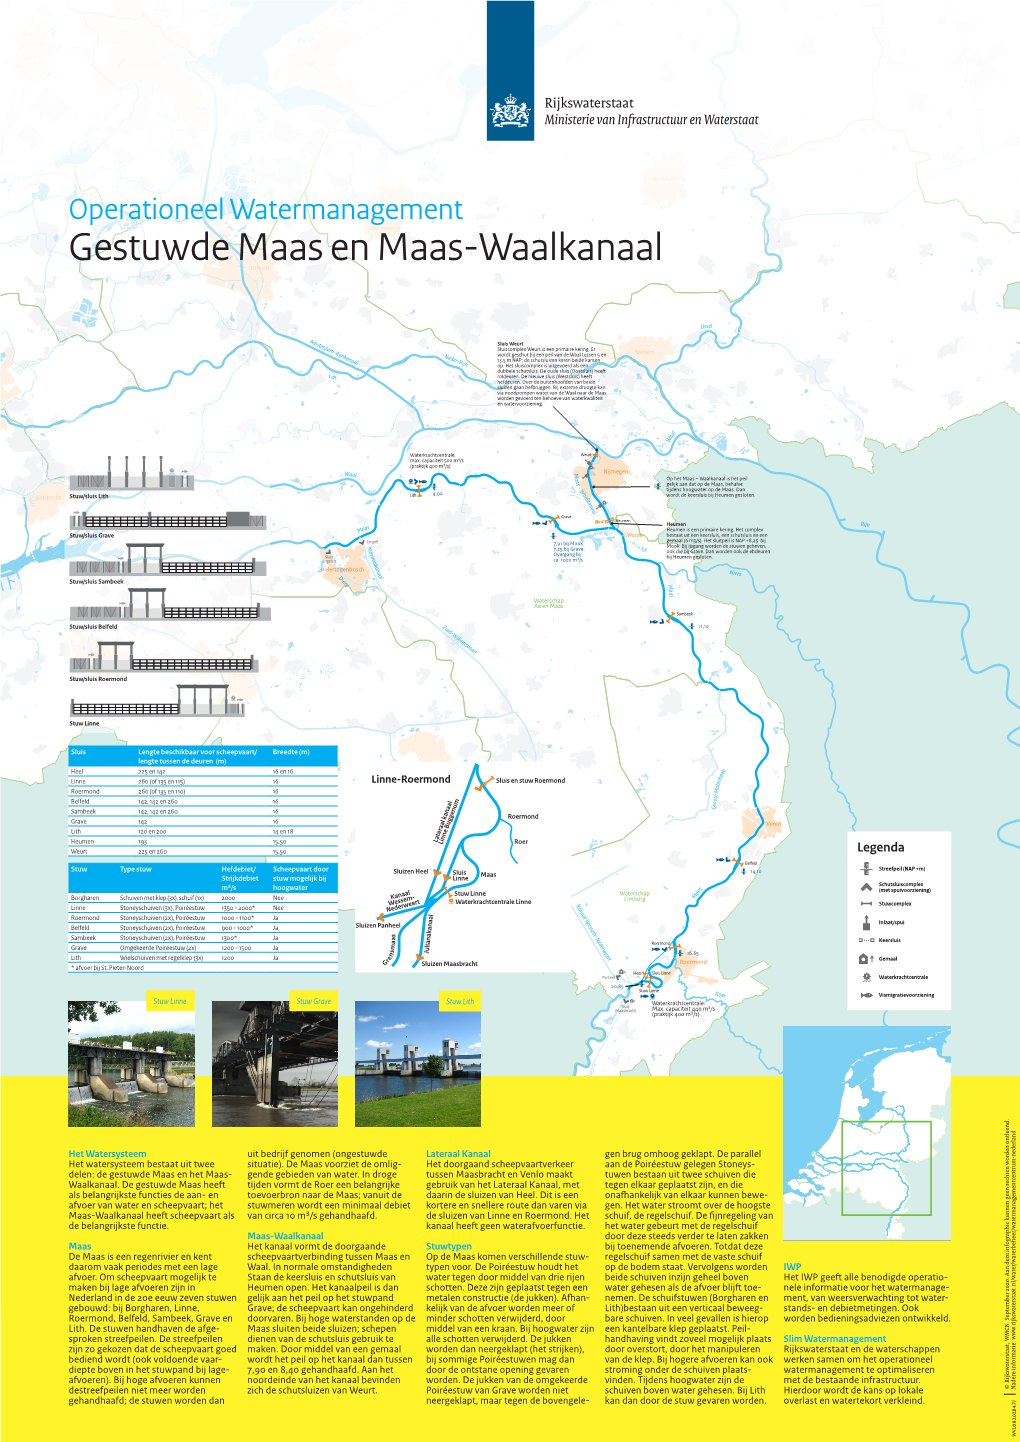 Gestuwde Maas En Maas-Waalkanaal